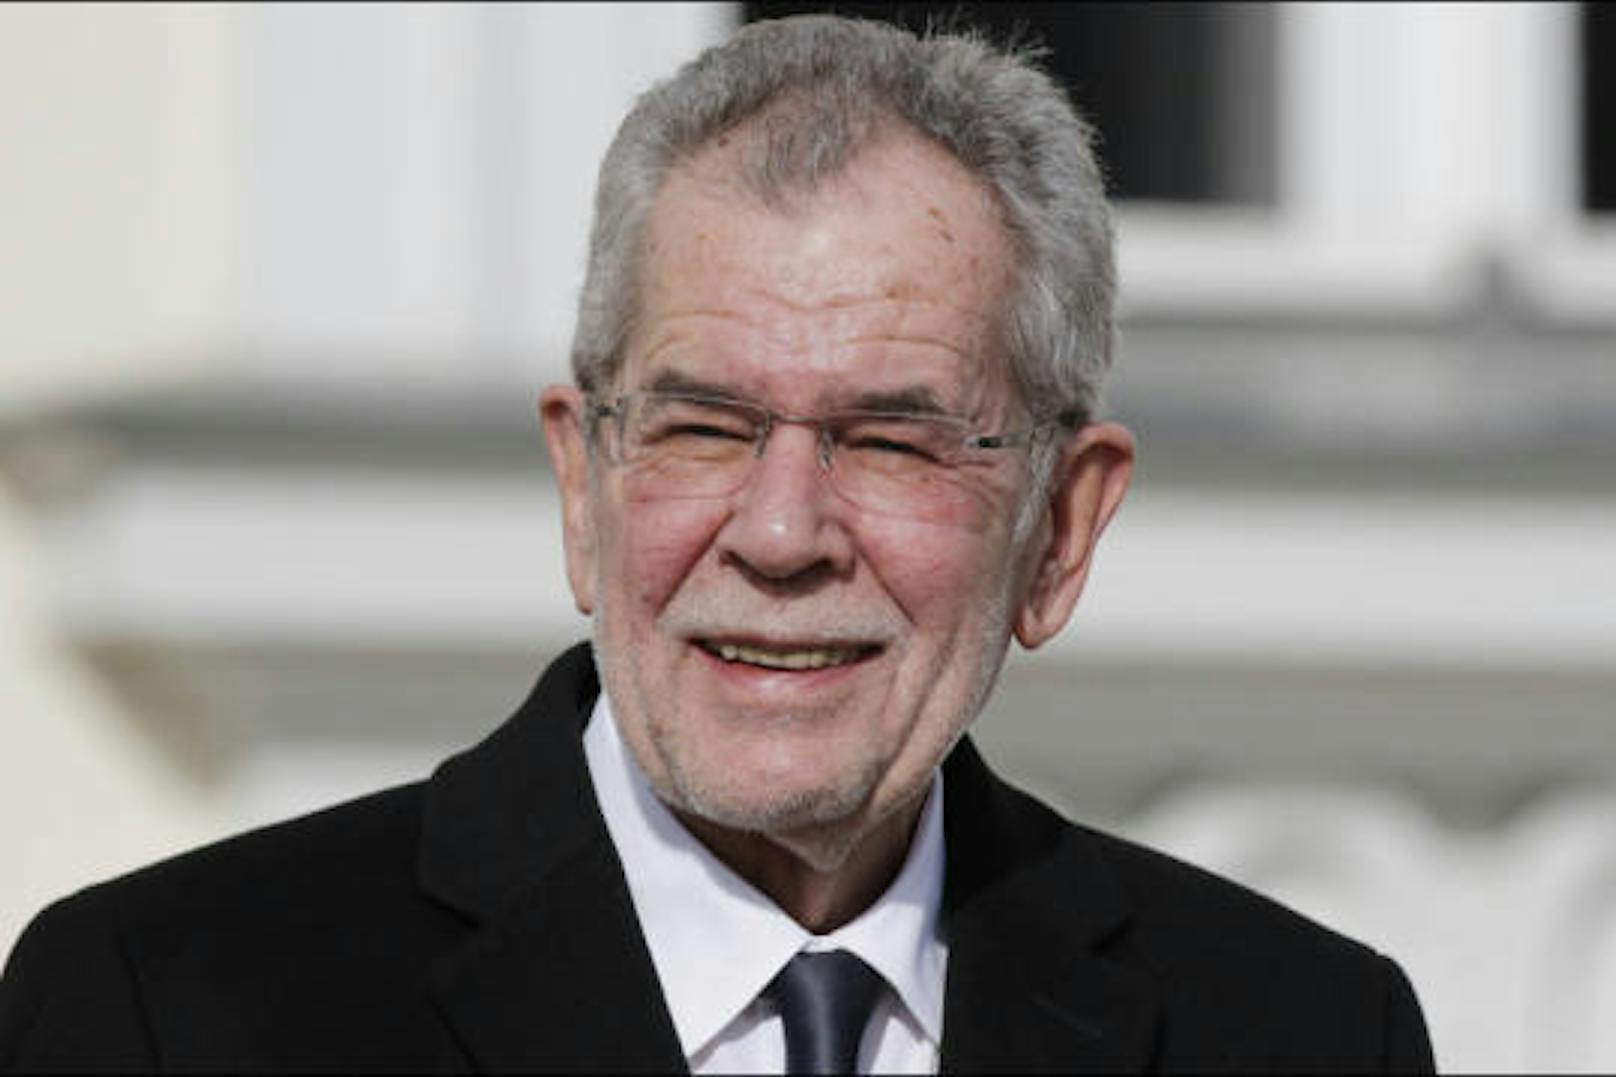 Gastgeber heute Abend in der Wiener Hofburg: Bundespräsident Alexander Van der Bellen